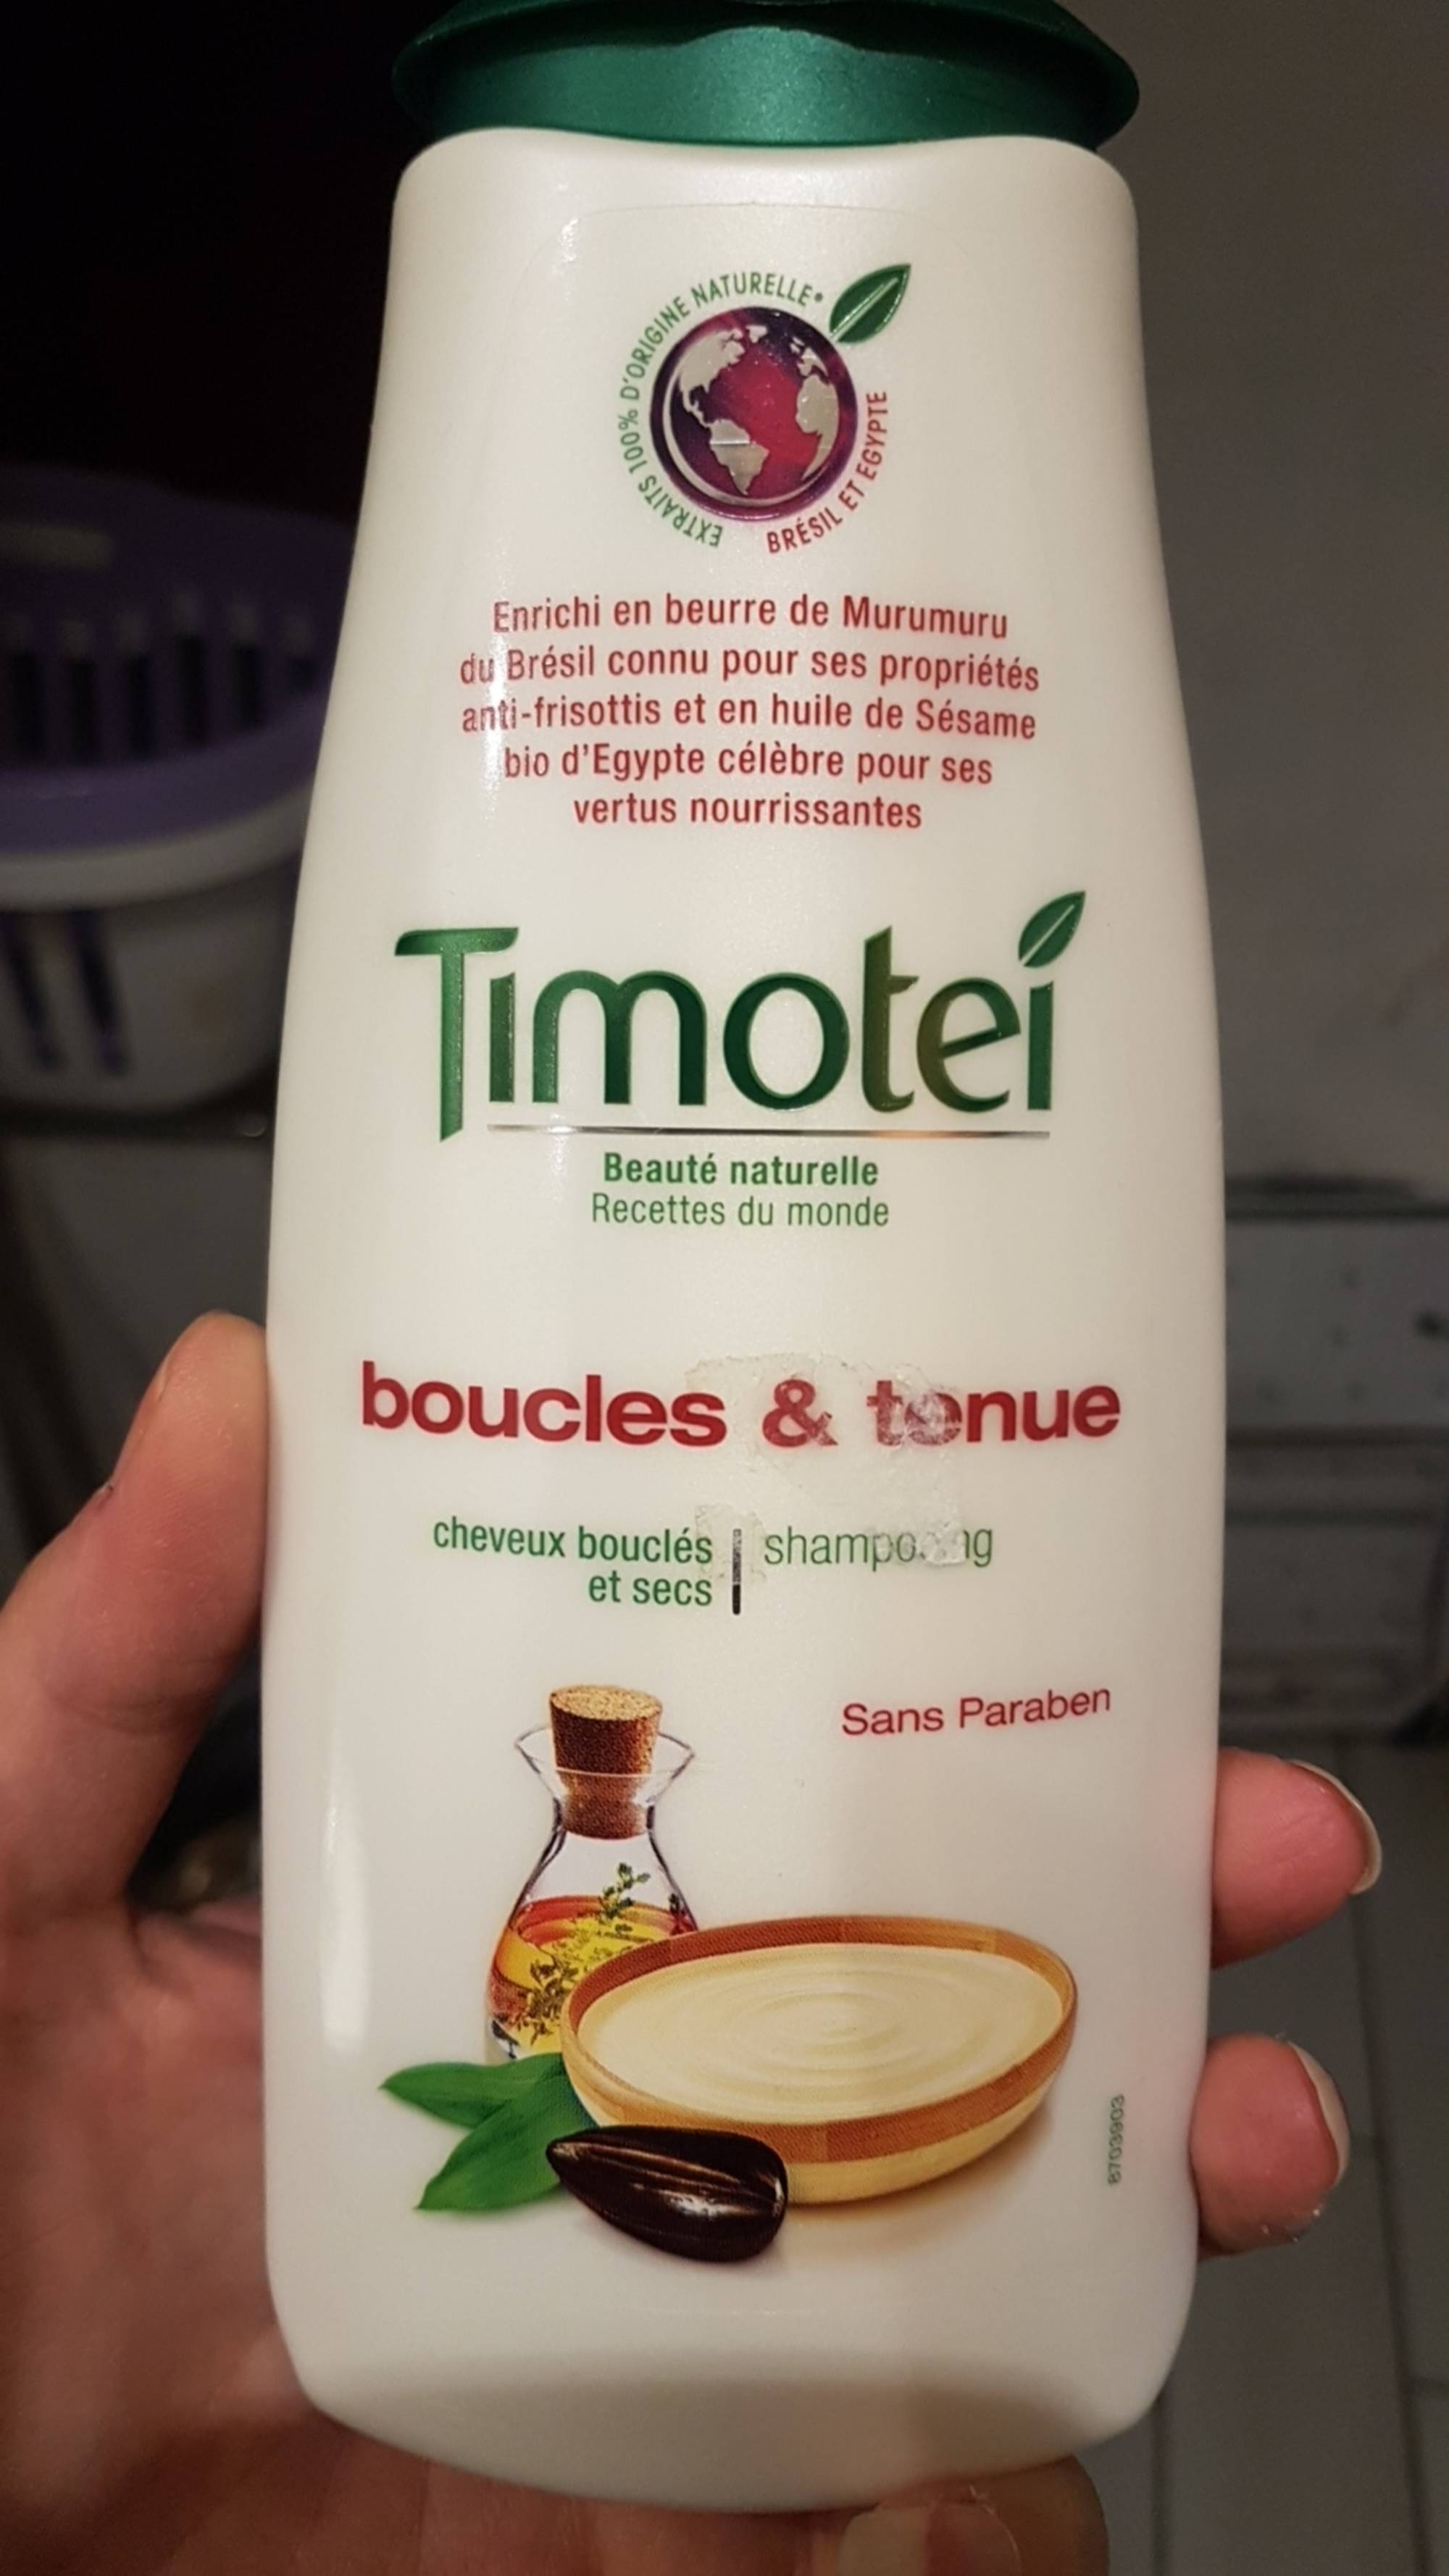 TIMOTEI - Boucles & tenue - Shampooing cheveux bouclés et secs